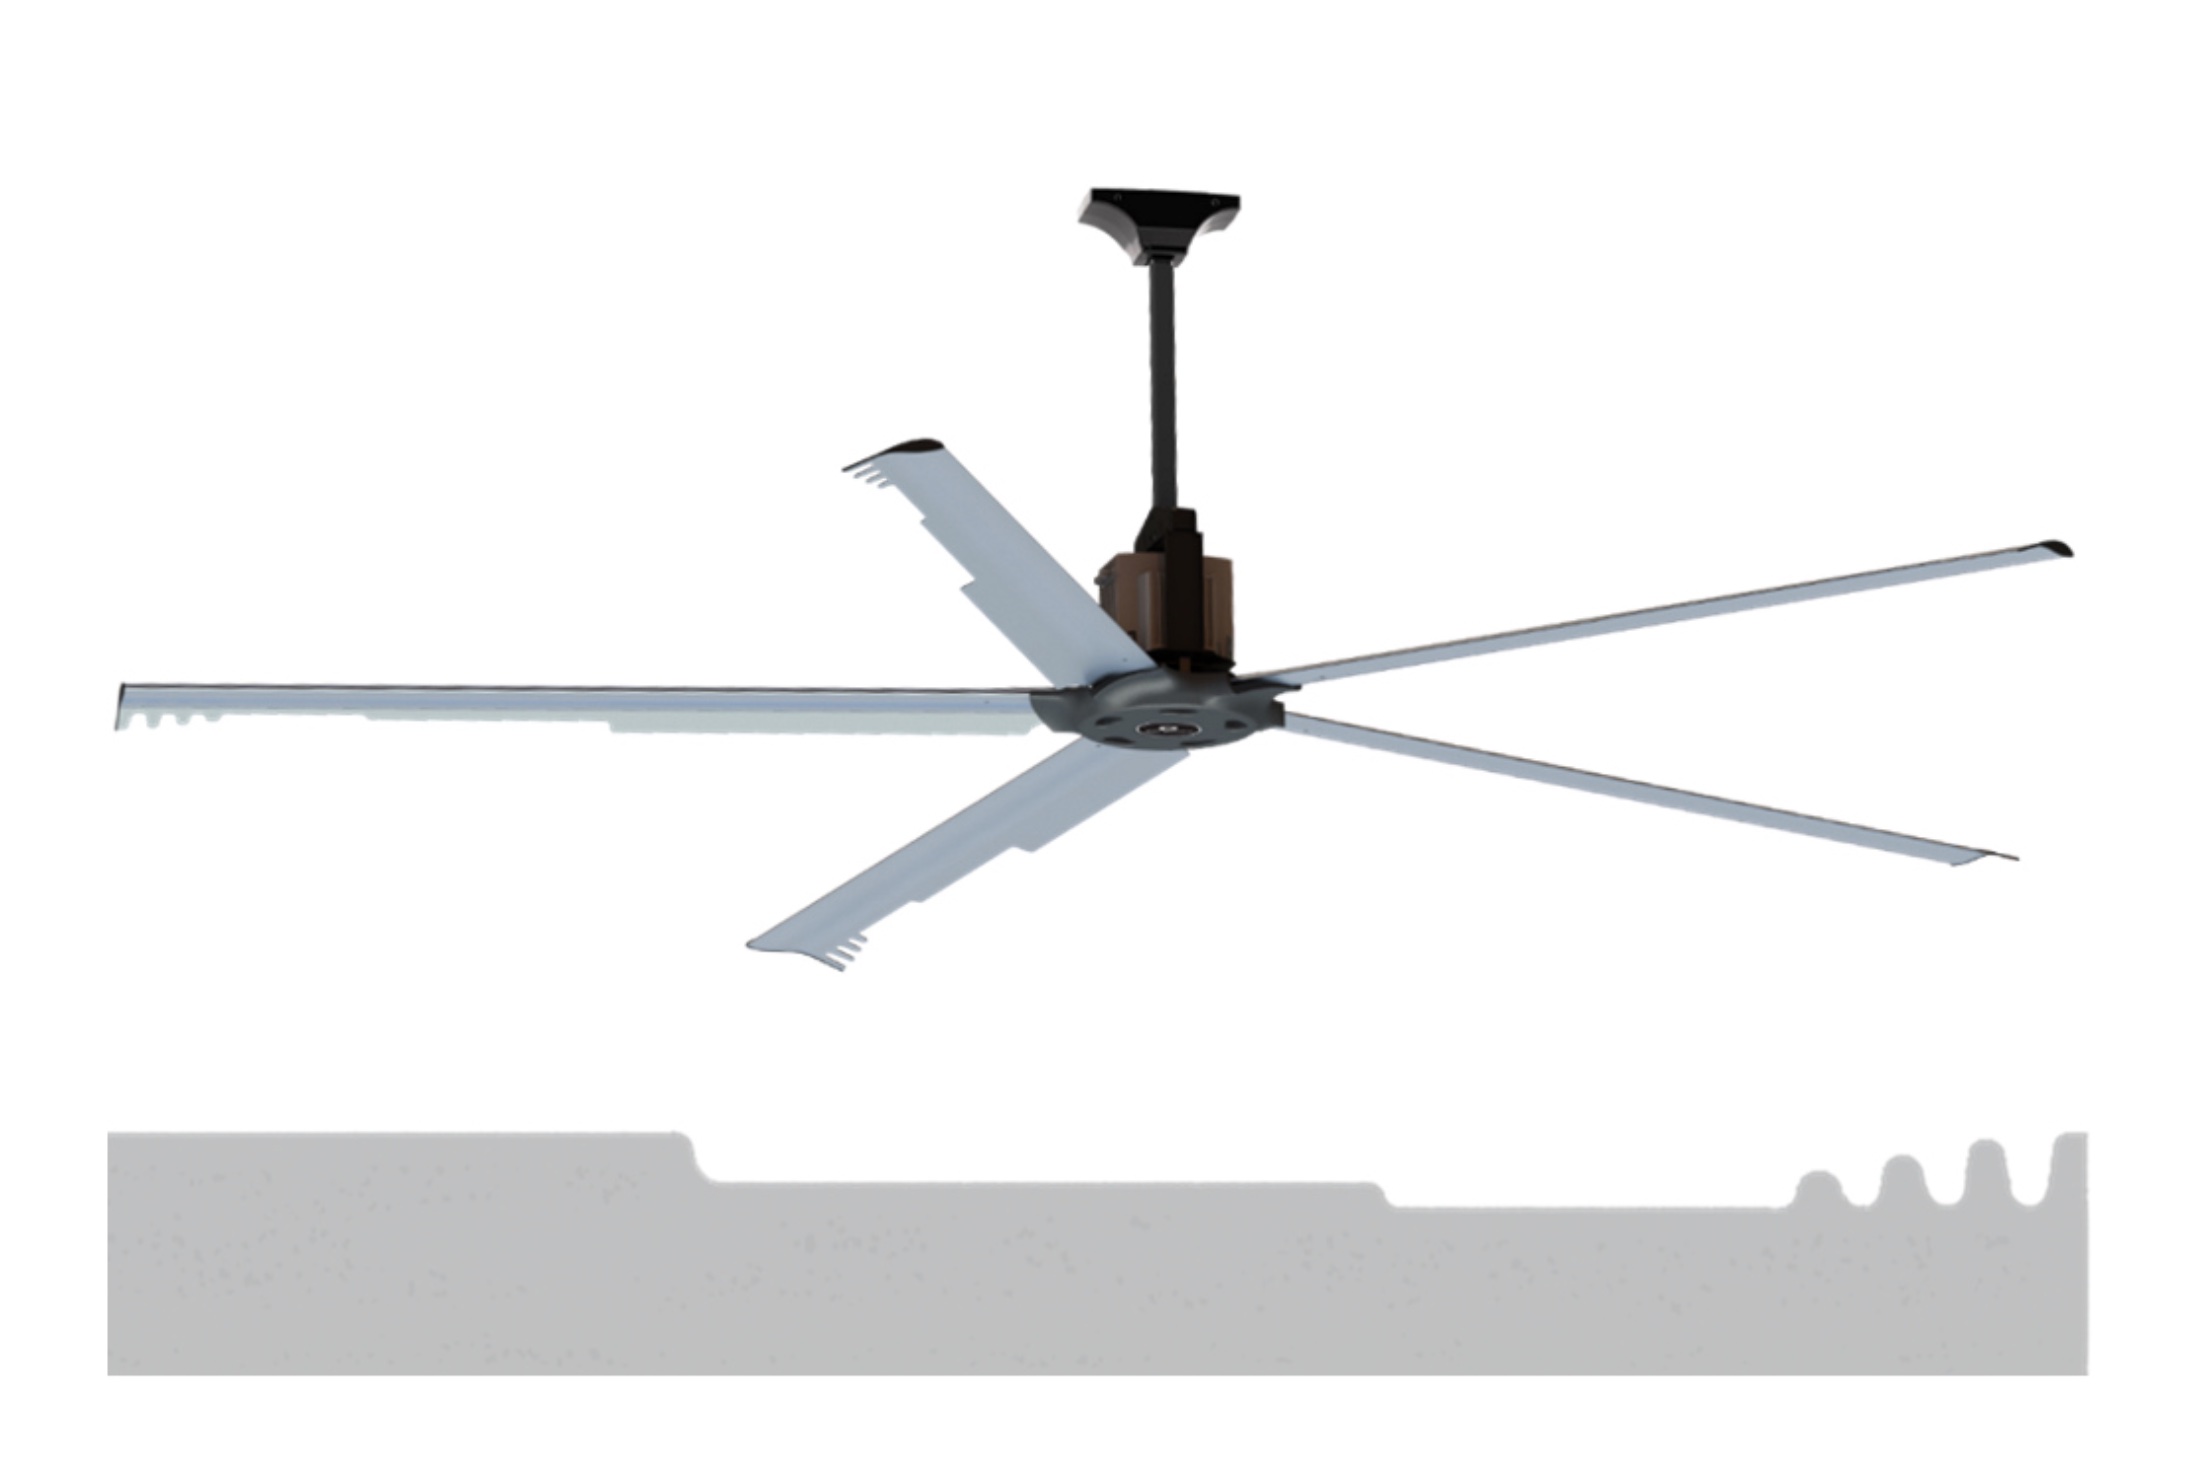 ventilatori industriali da soffitto HVLS  con 3 o 5 pale in alluminio a profilo alare ottimizzato